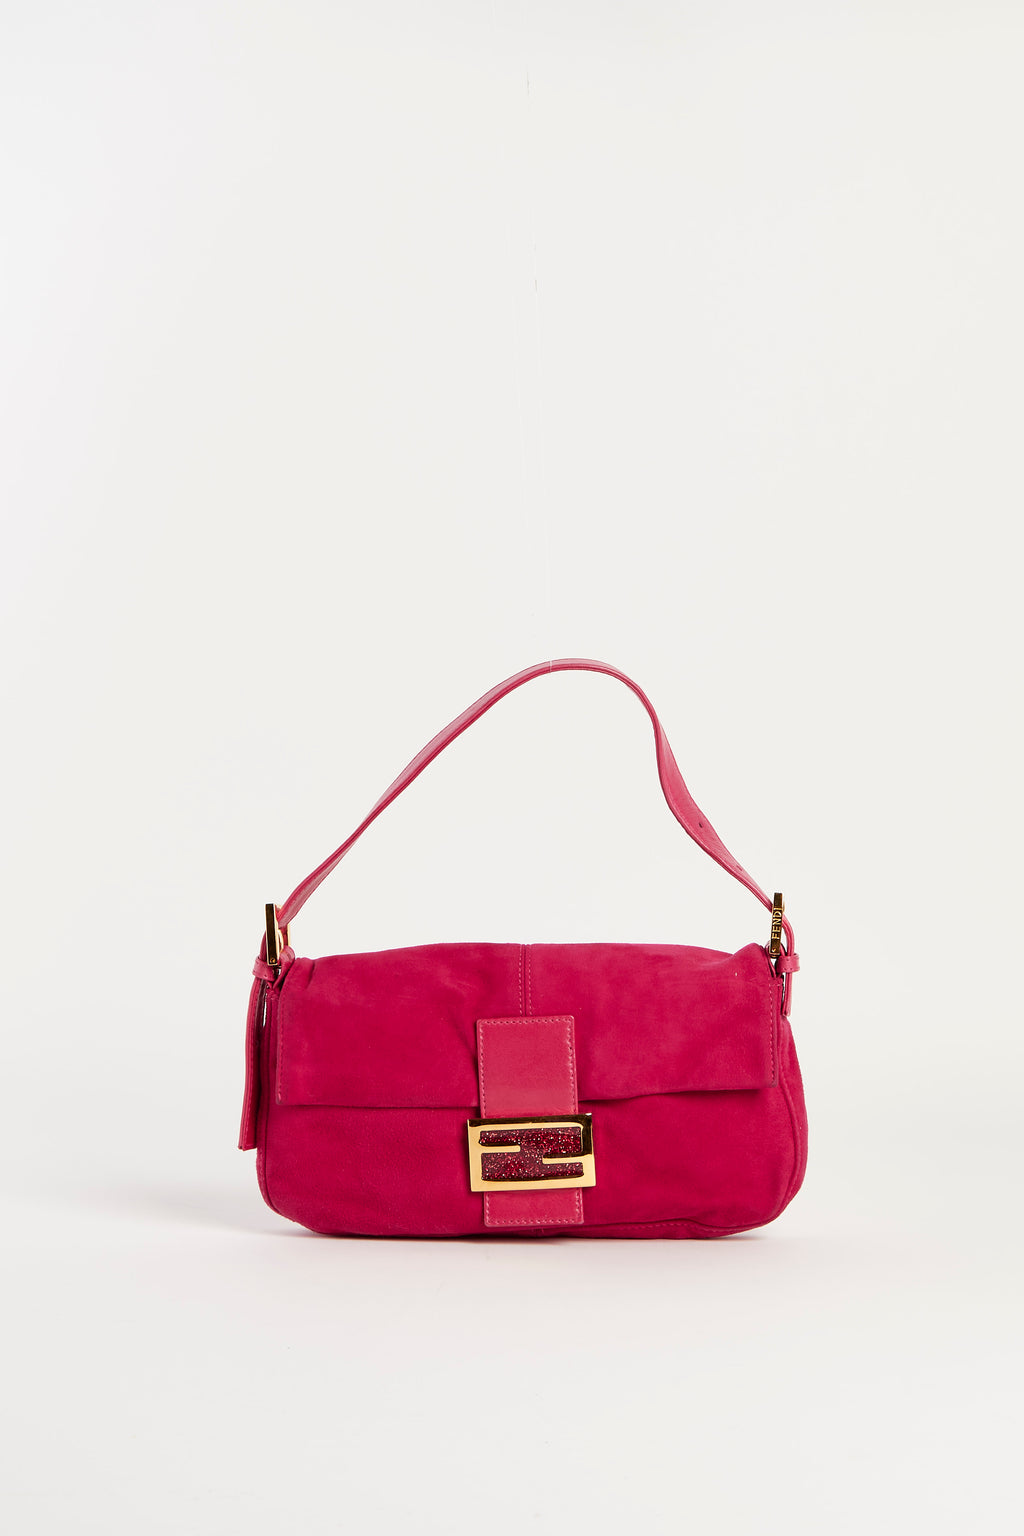 Vintage Fendi Pink Suede Baguette Shoulder Bag